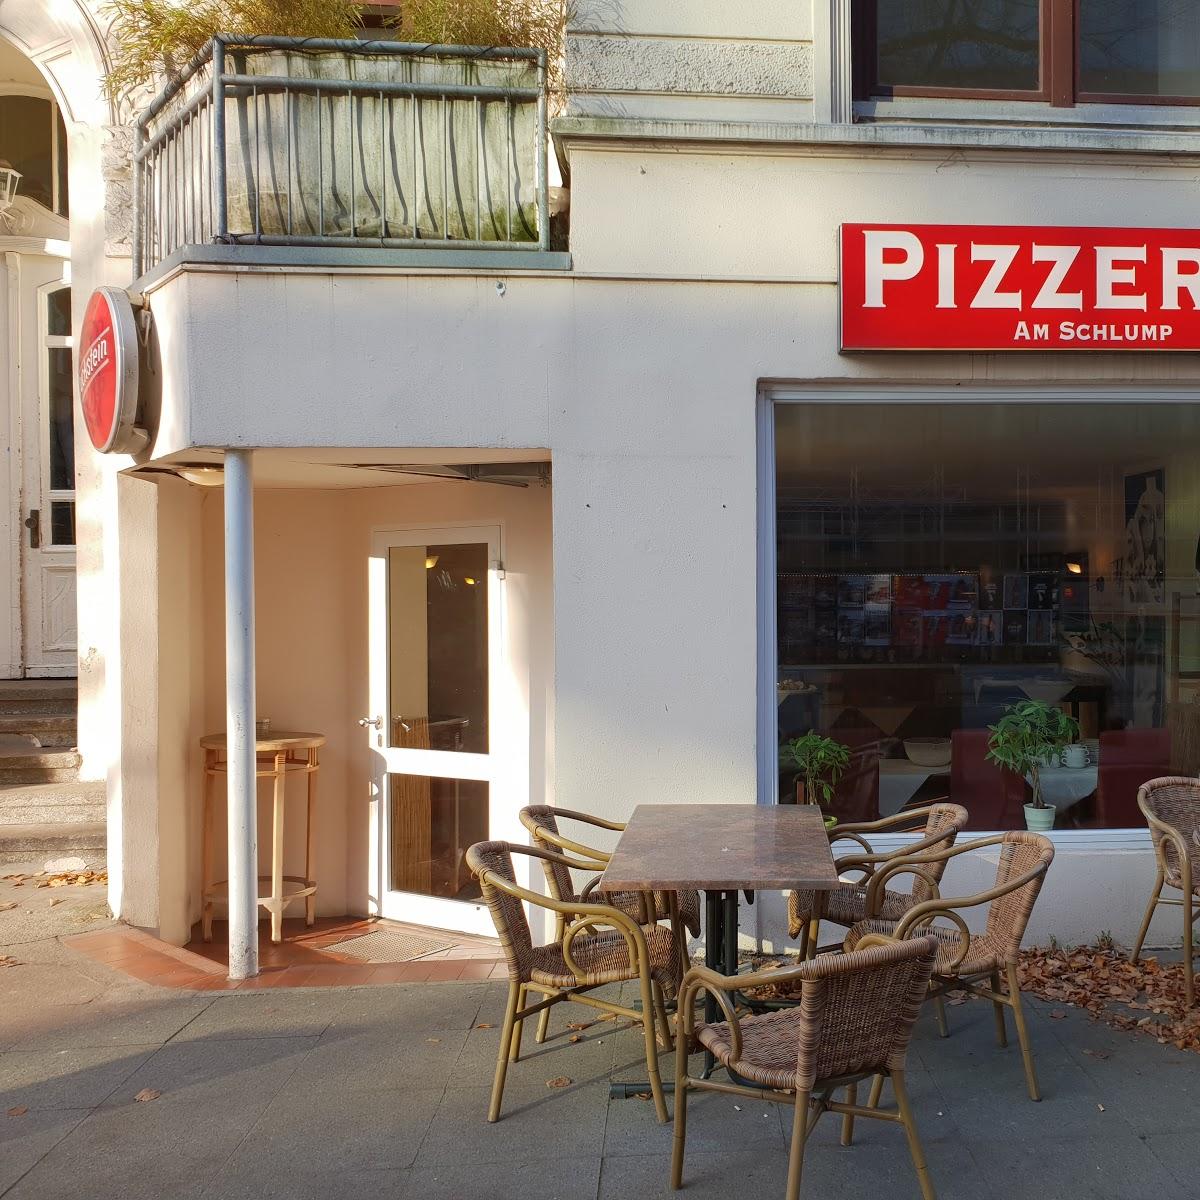 Restaurant "Pizzeria am Schlump" in Hamburg